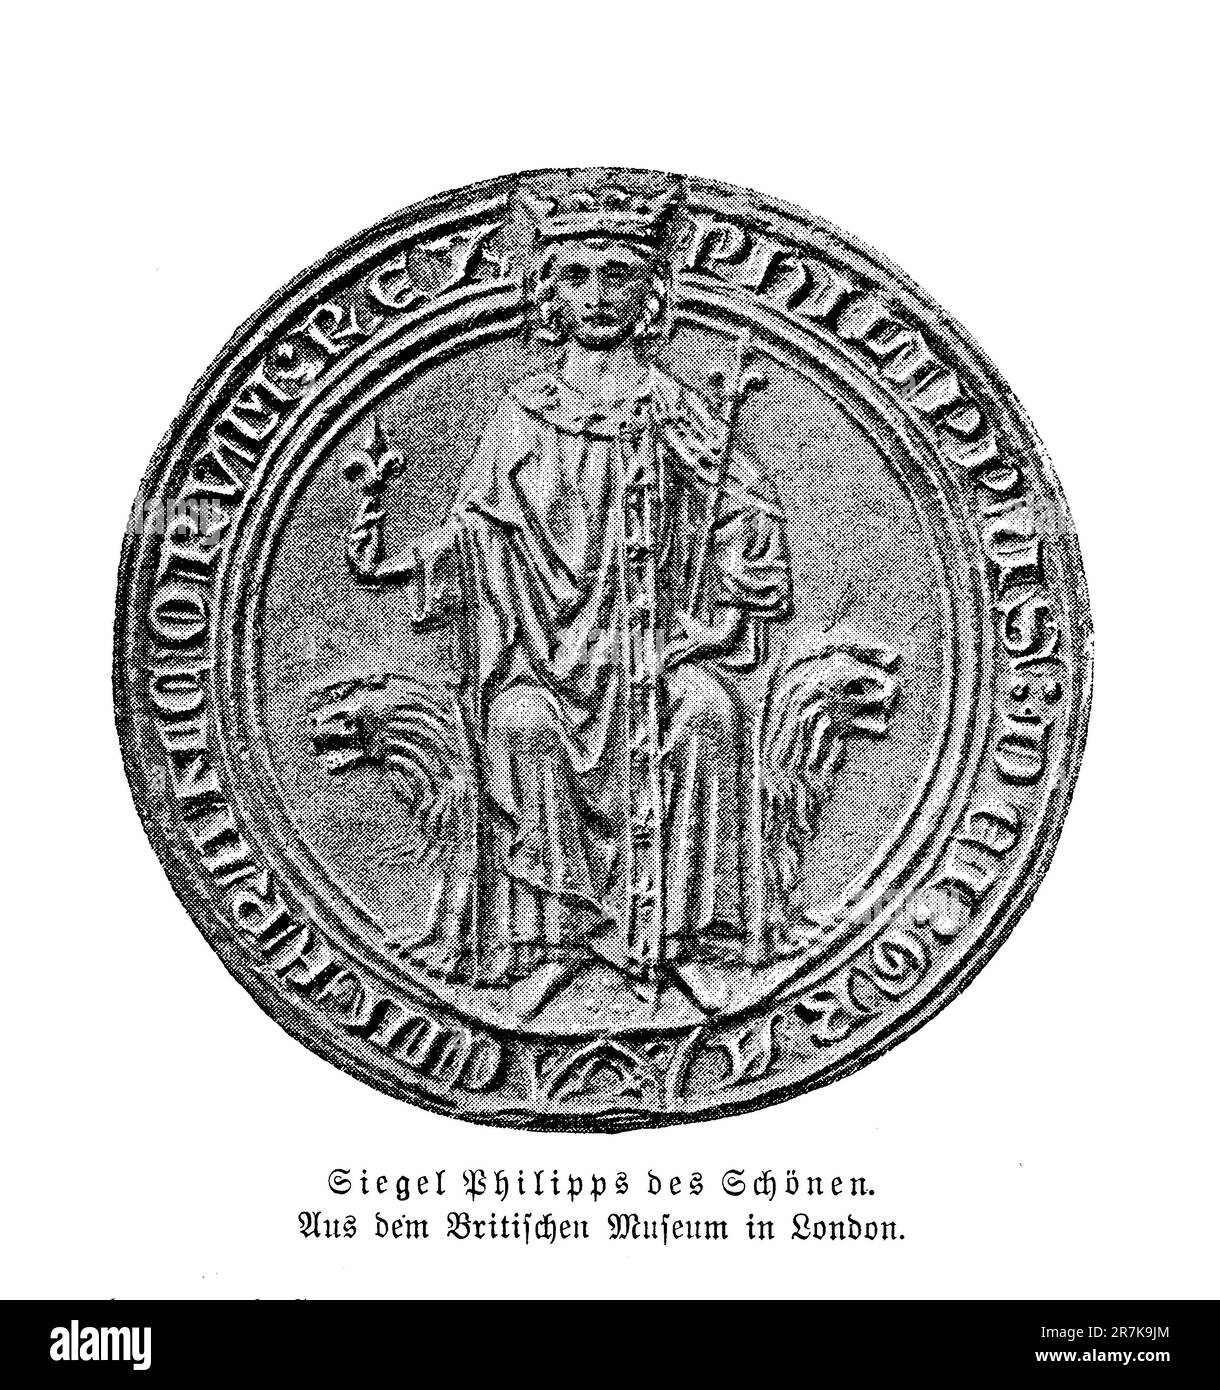 Siegel von Philip IV. Die Messe von Frankreich, auch König von Navarra (13. Jahrhundert) Stockfoto